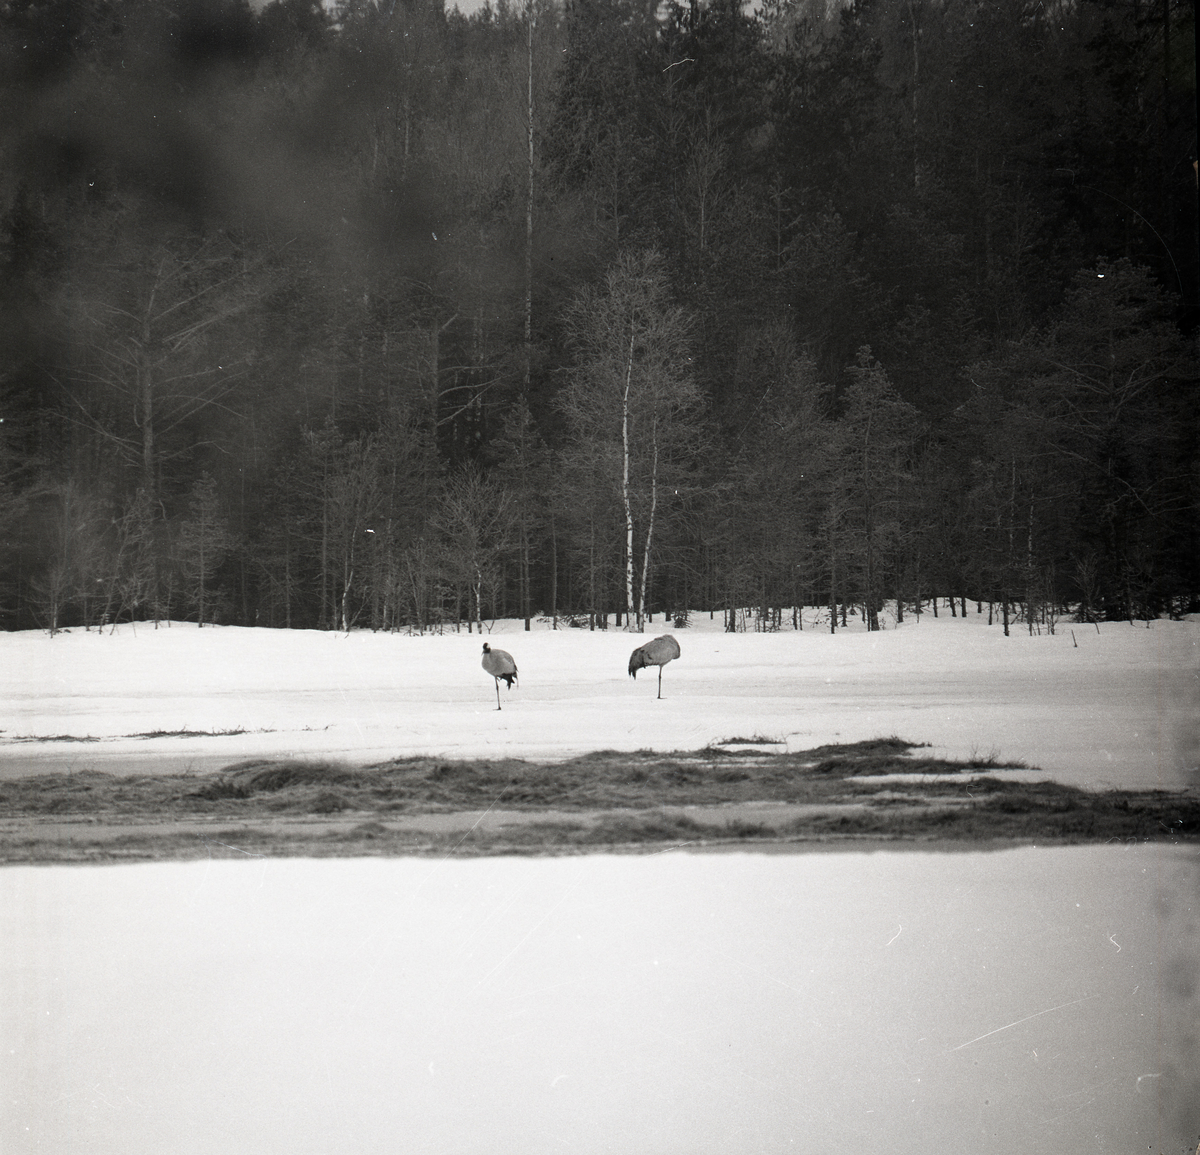 Två tranor på snötäckt mark vid en skog, 19 April 1978.